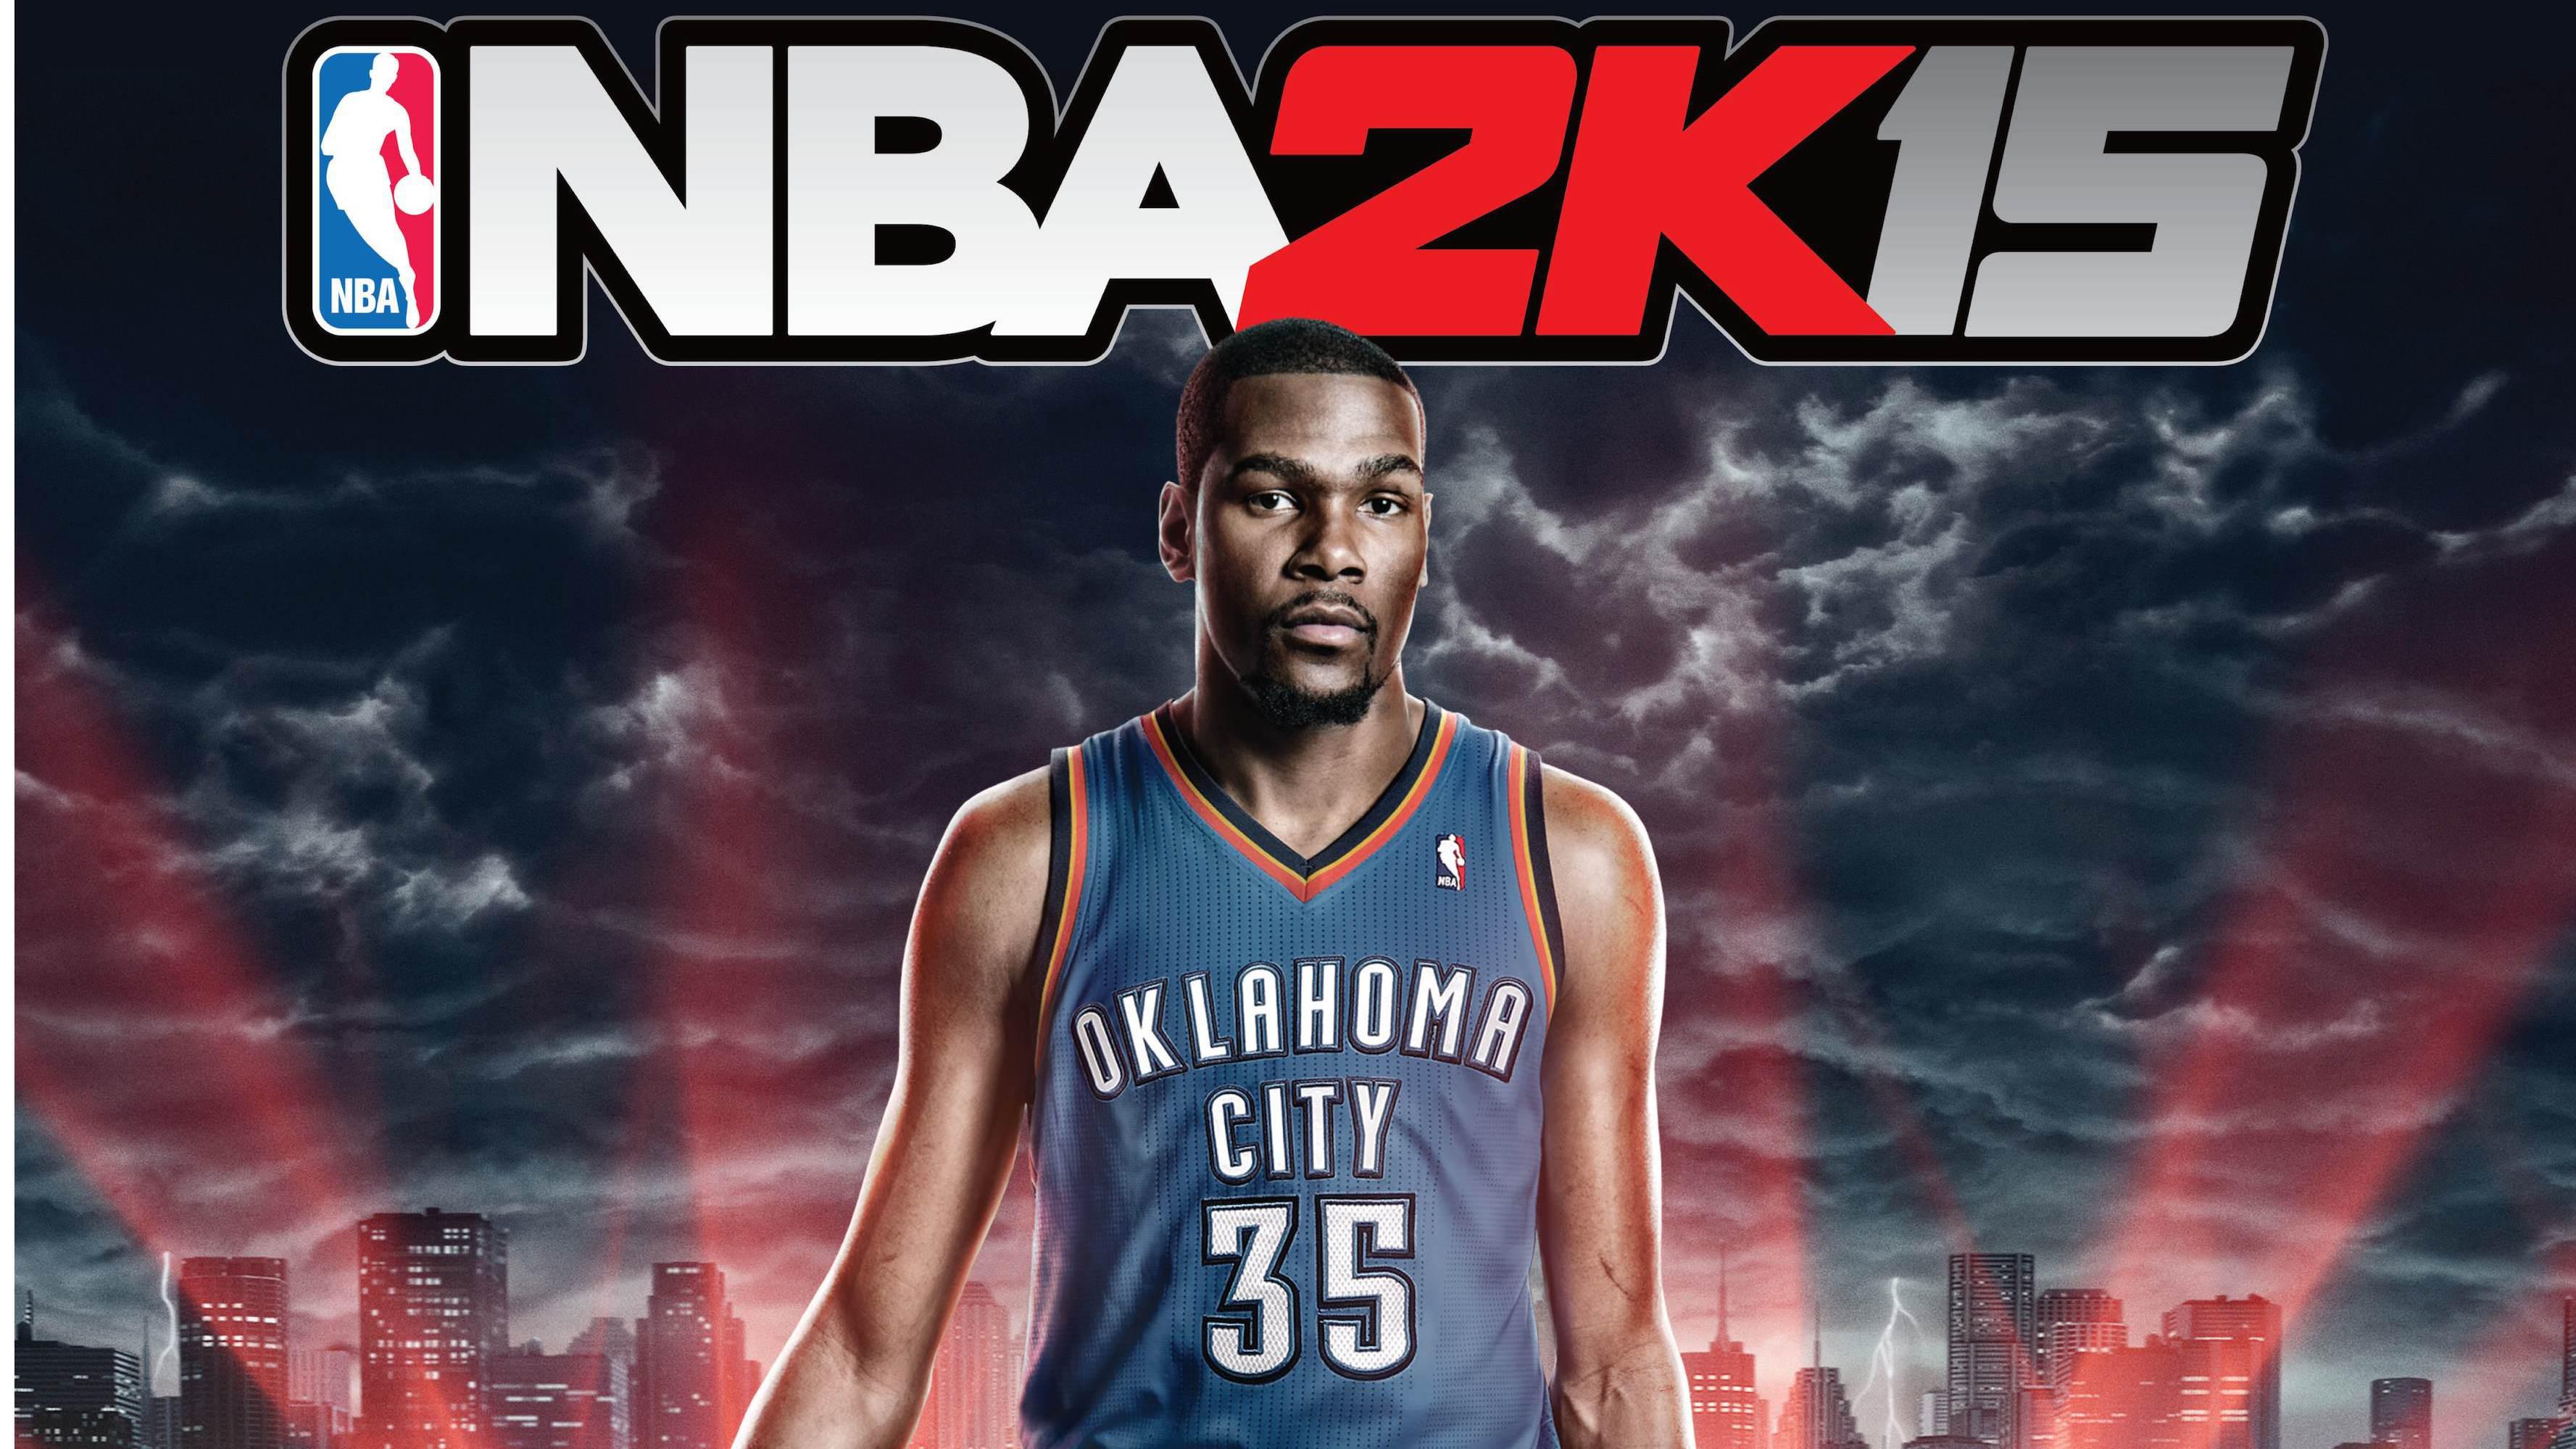 Kevin Durant NBA 2K15 wallpaper,games HD wallpaper,2015 HD ...